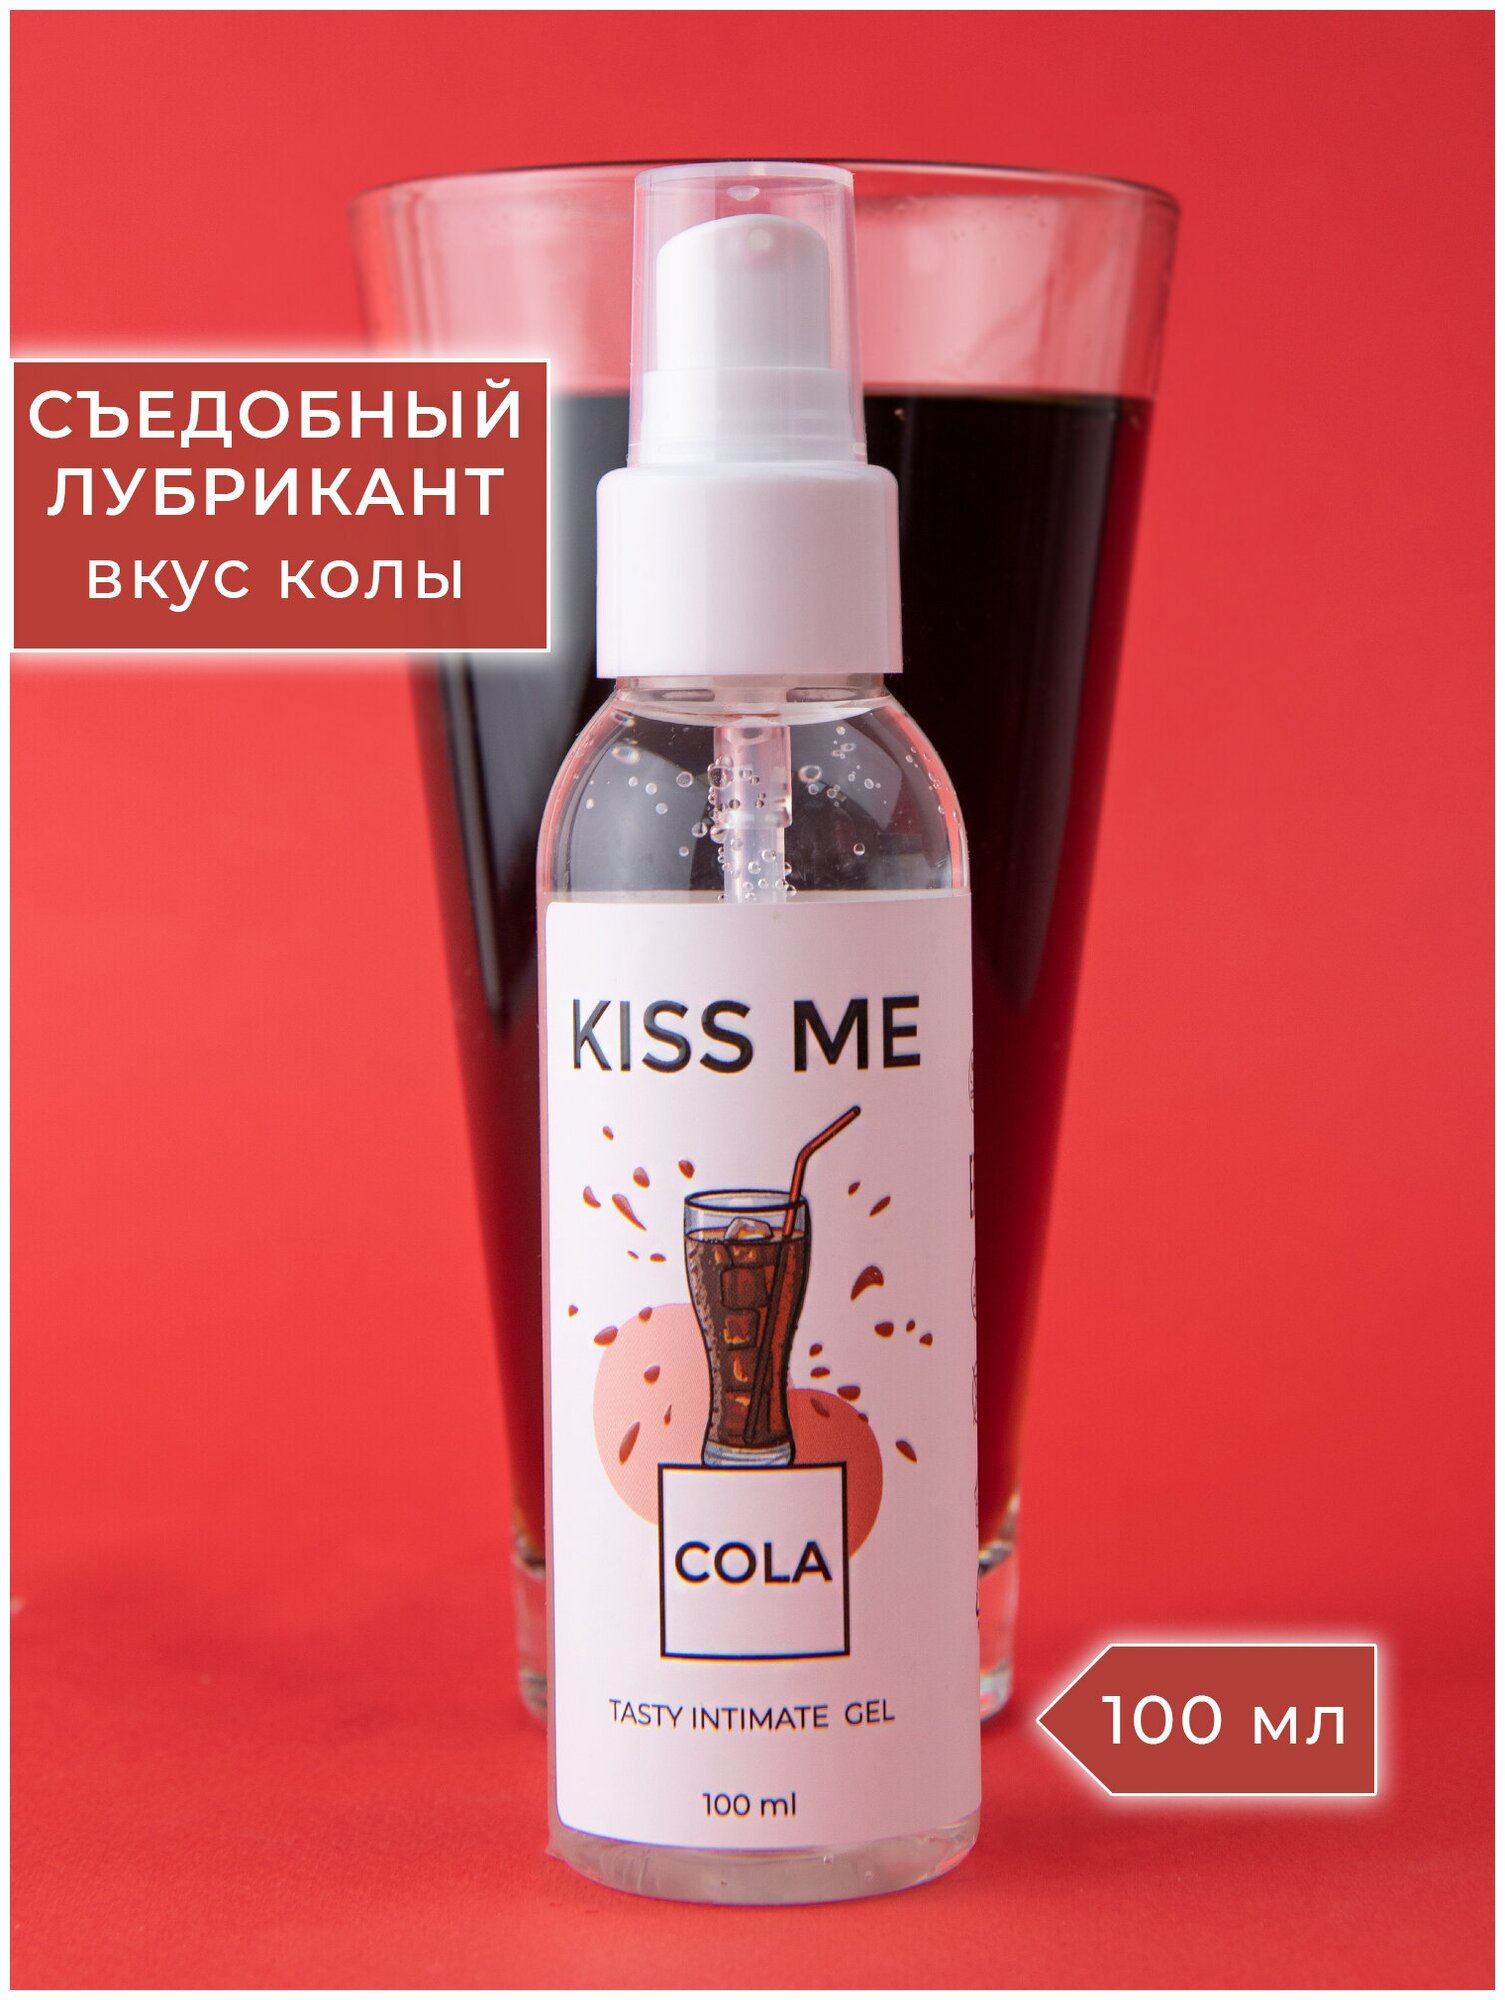 Гель-смазка Smaska Съедобный лубрикант на водной основе "Kiss me" со вкусом Кола 100 мл